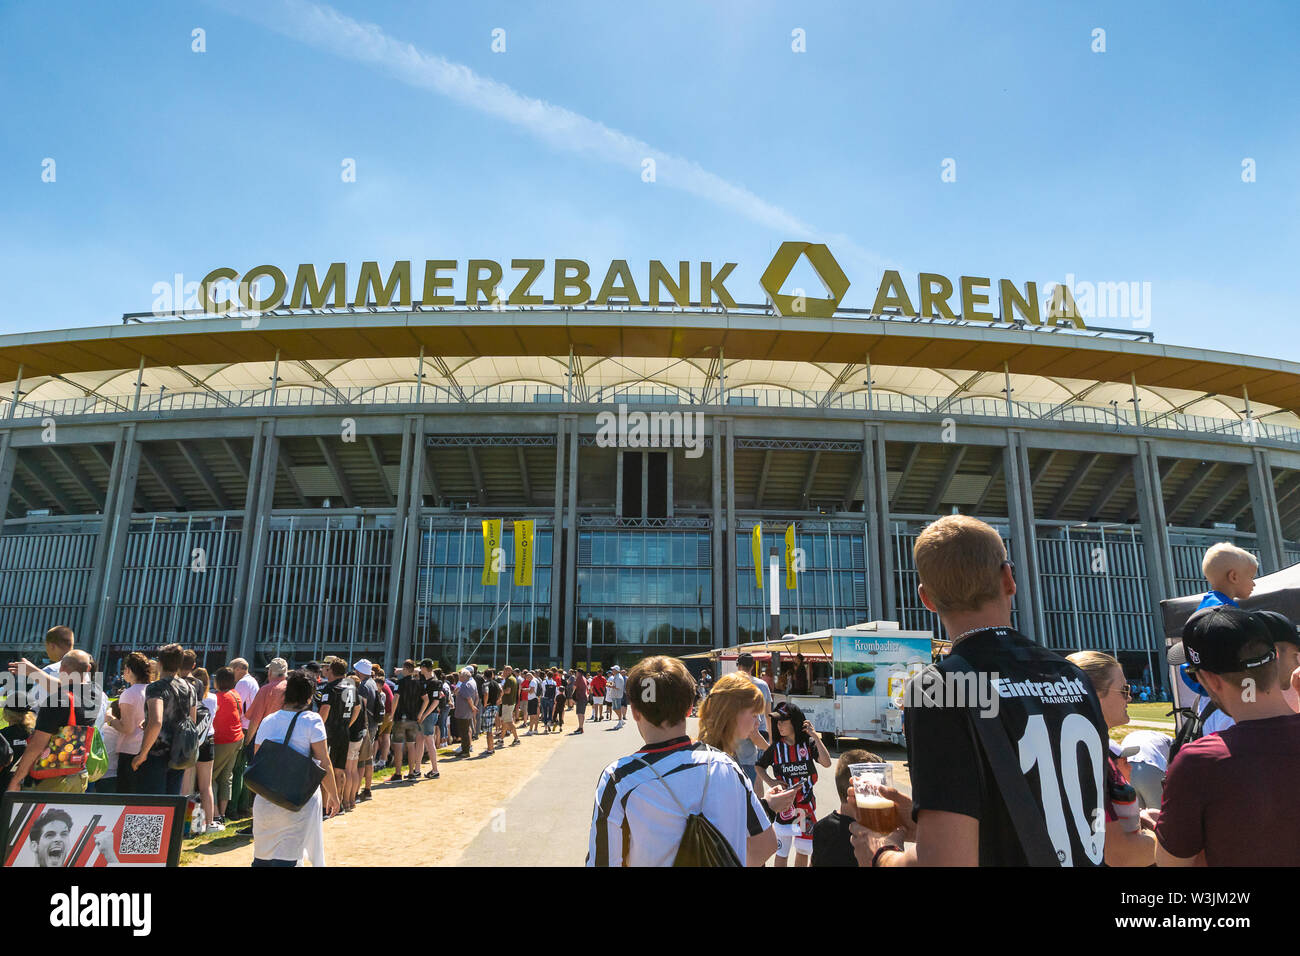 Frankfurt, Deutschland - Juli 2019: Blick auf die Commerzbank Arena und Fußball-Fans. Commerzbank-Arena ist home Stadion des Fußball-Club Eintracht Frankfurt. Stockfoto